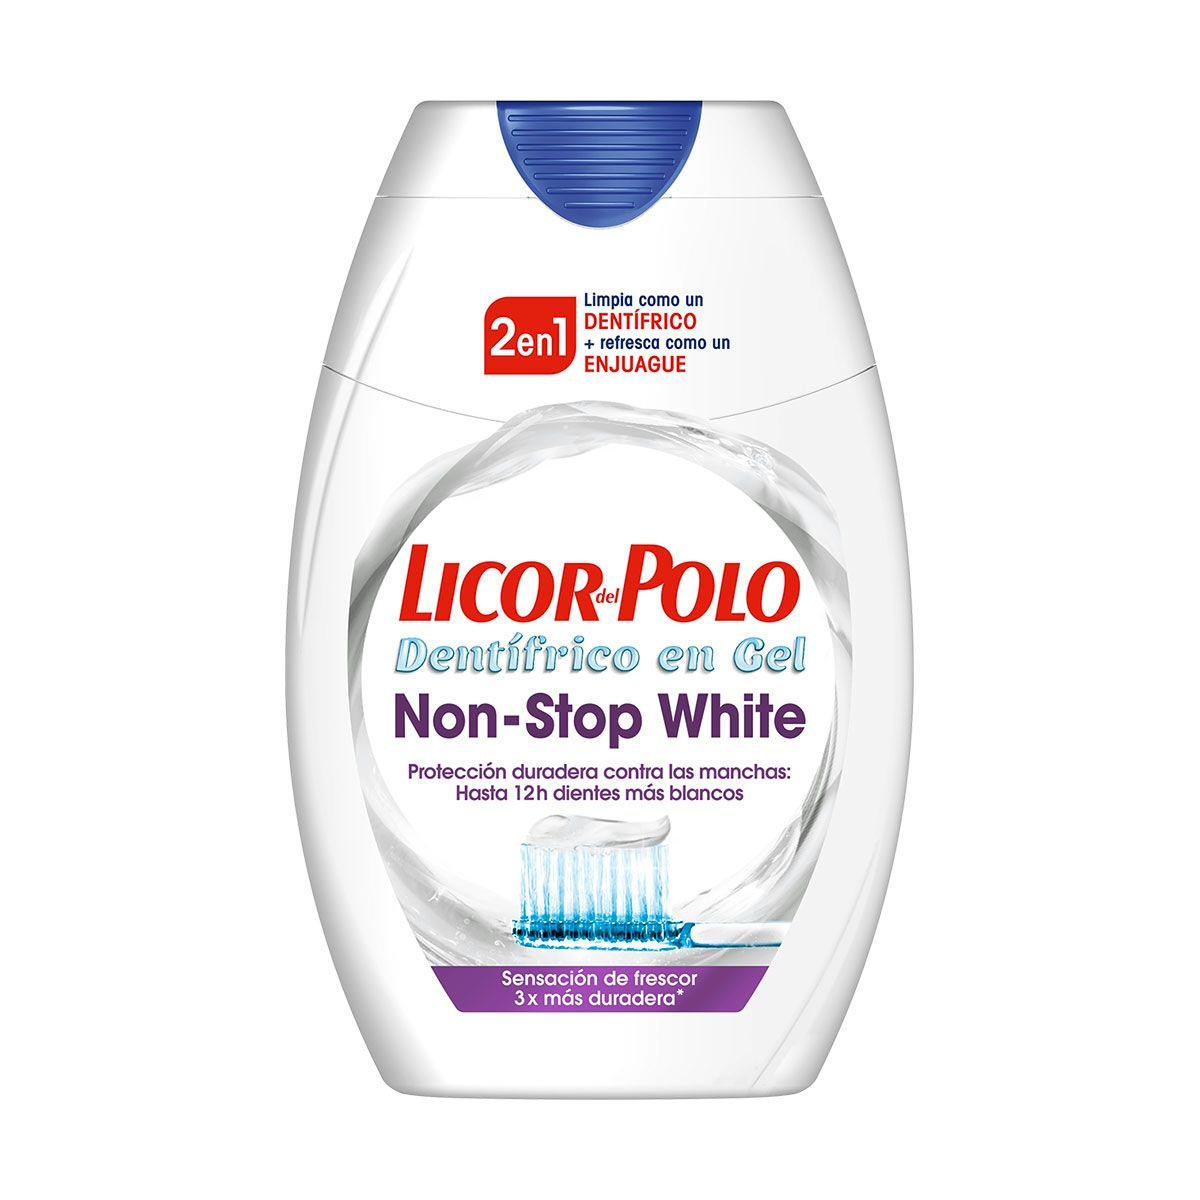 Dentífrico 2en1 Non-Stop White 75 ml de LICOR DEL POLO